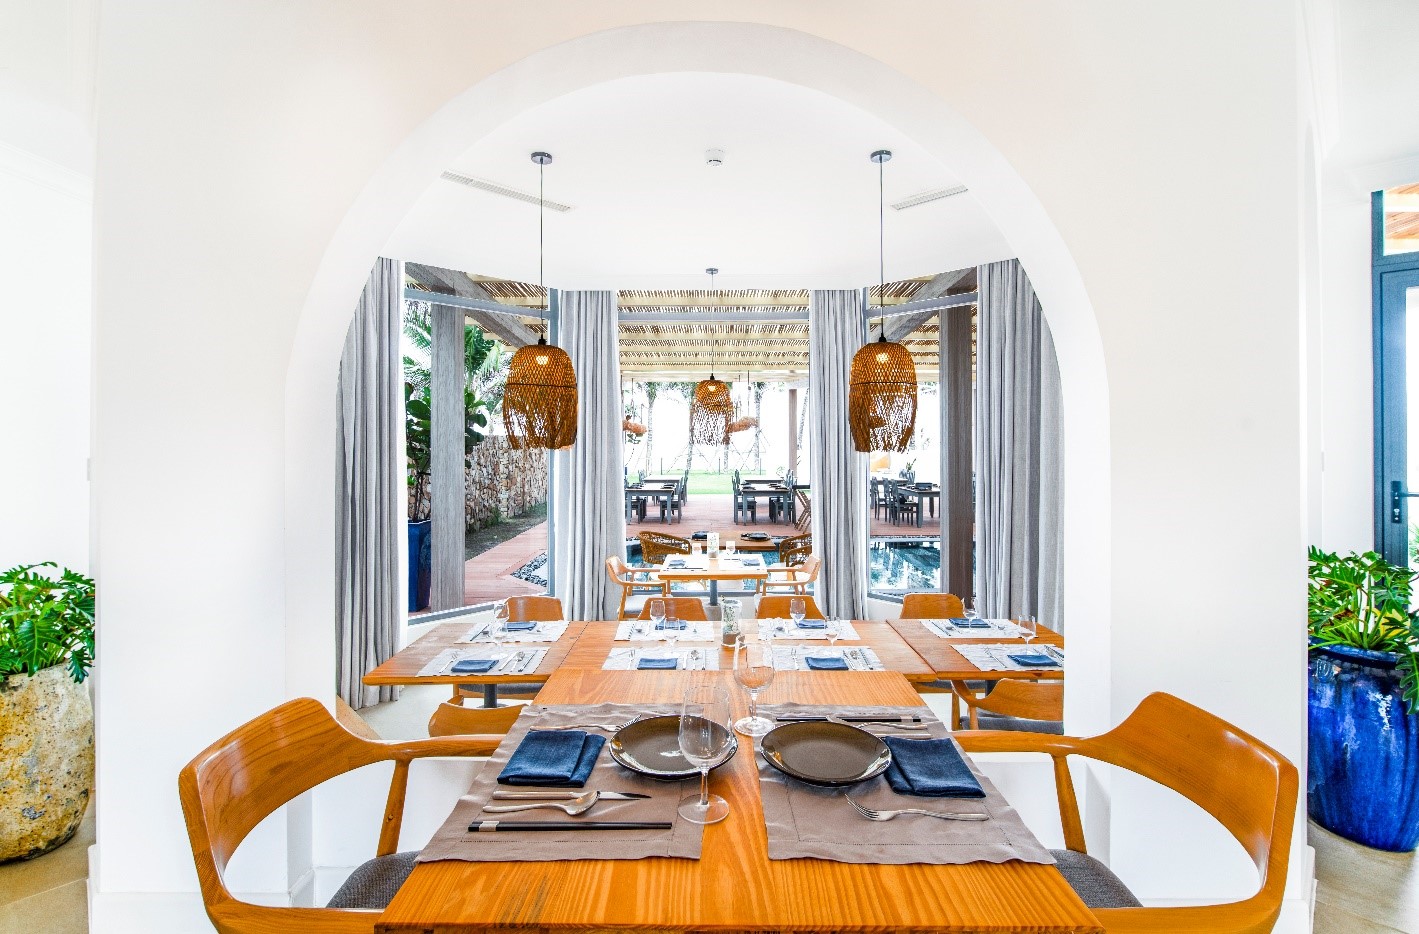 Nhà hàng Mazi - tiện ích mang đến trải nghiệm thú vị cho du khách khi nghỉ dưỡng tại Cam Ranh Bay Hotels & Resorts